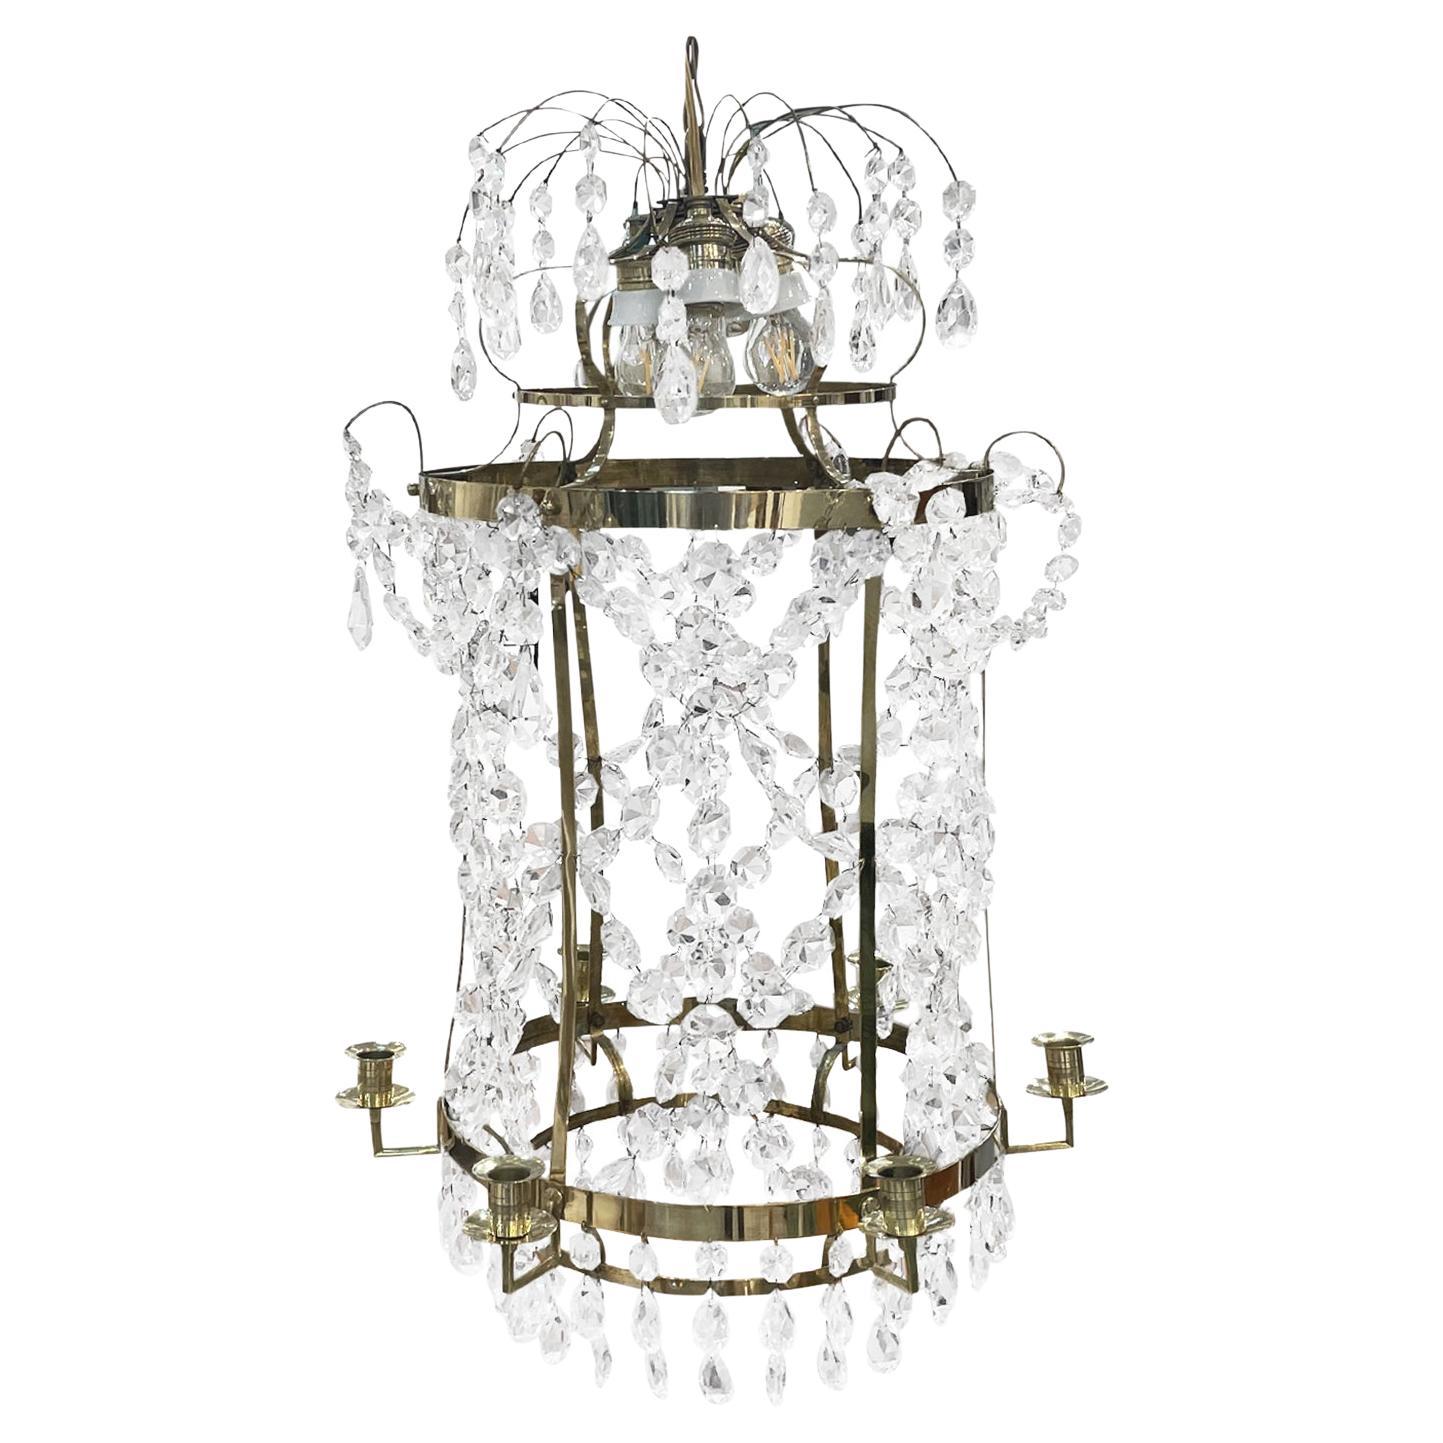 Lustre français ancien en cristal de style Empire du 19ème siècle, candélabre parisien